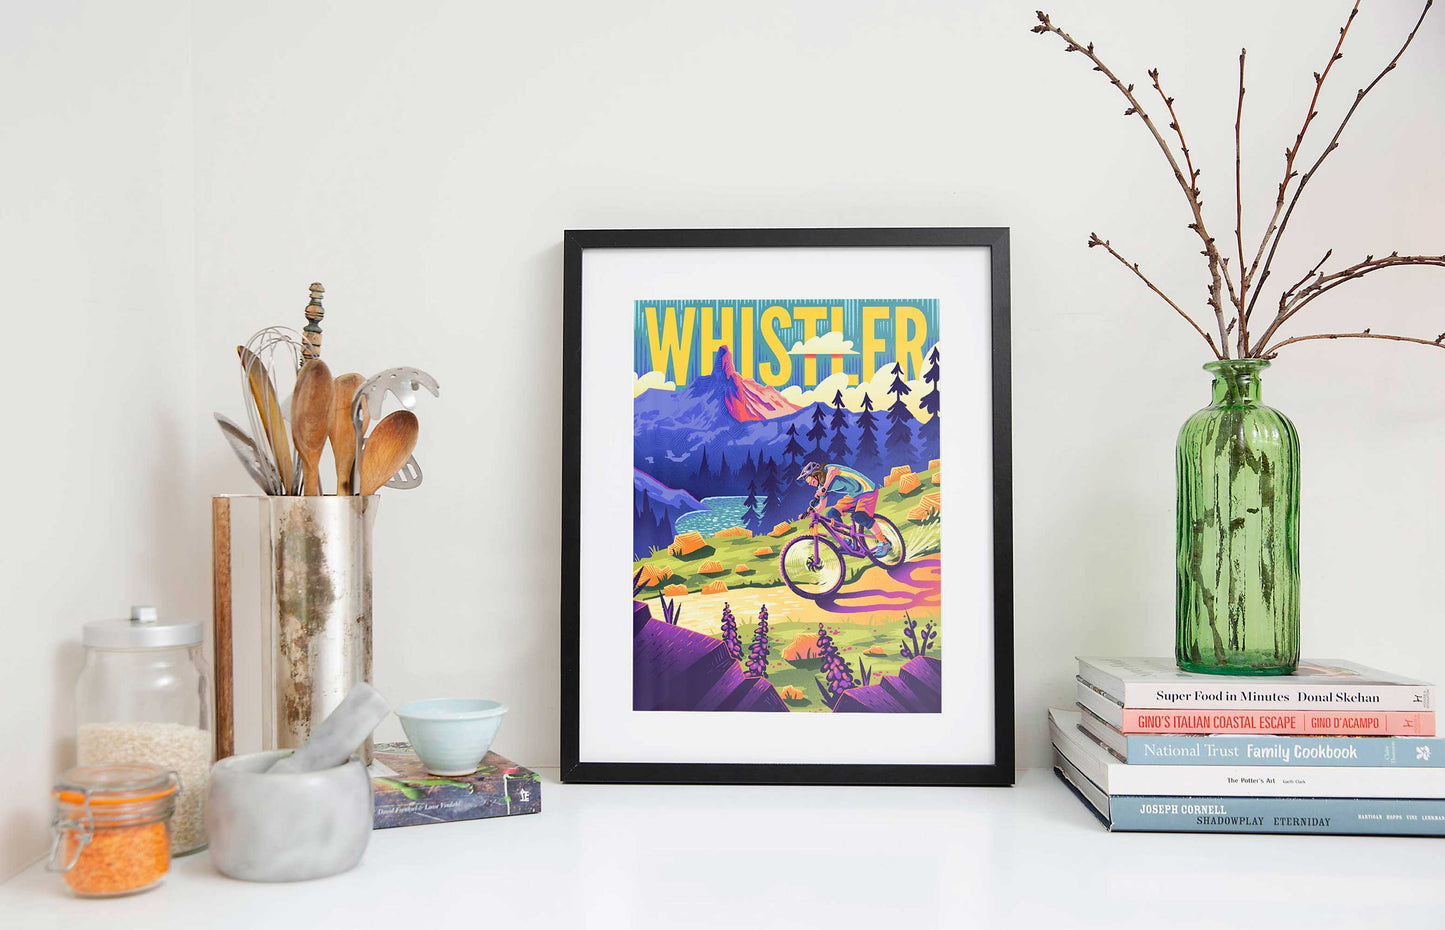 Whistler Mountainbike Reise Kunstdruck